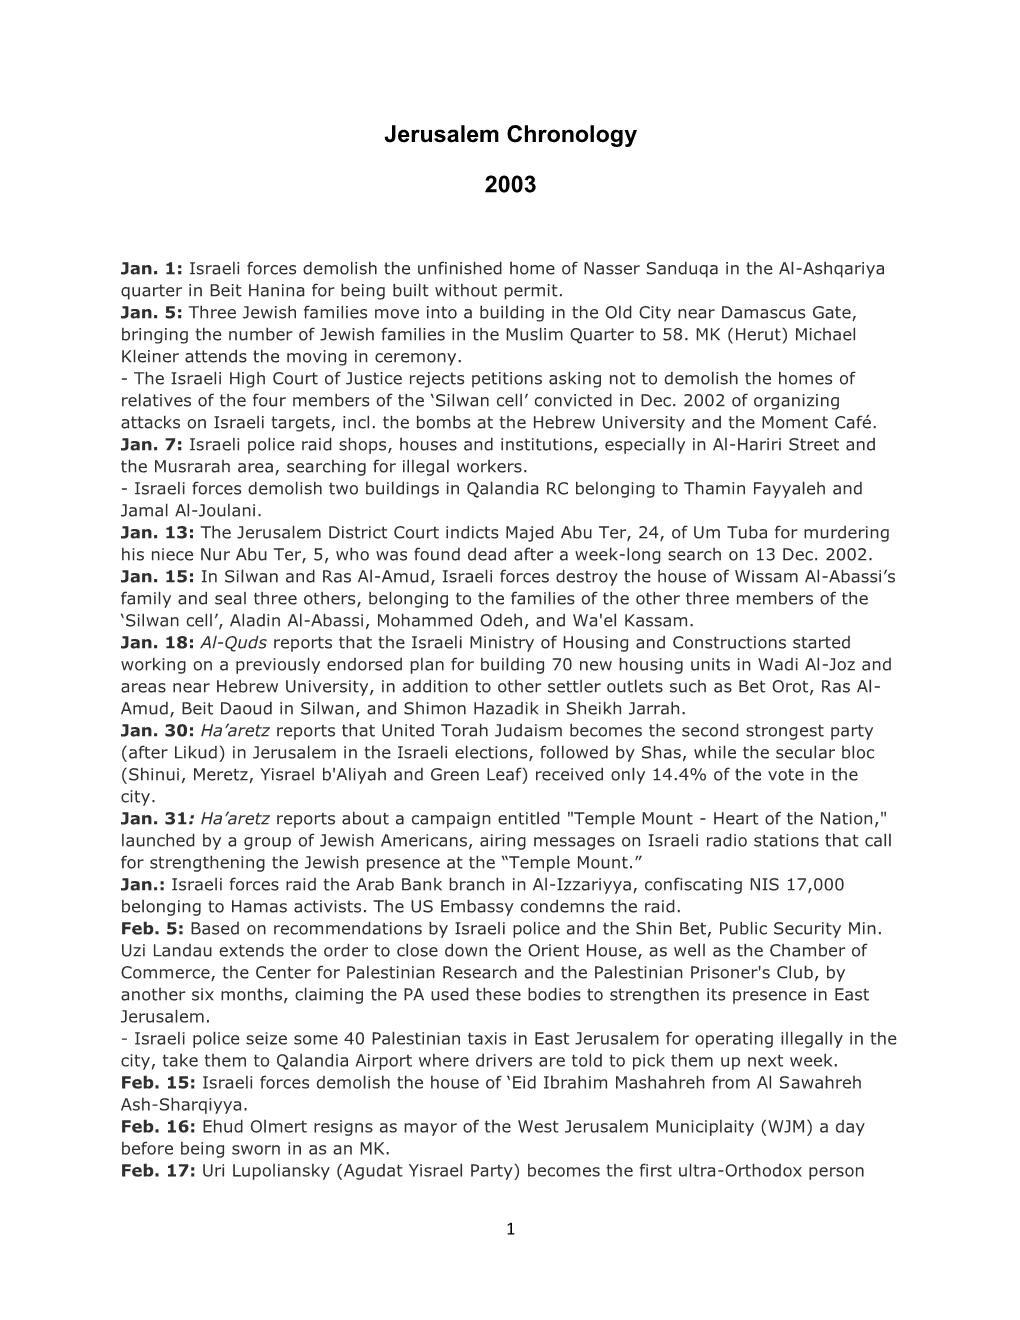 Jerusalem Chronology 2003